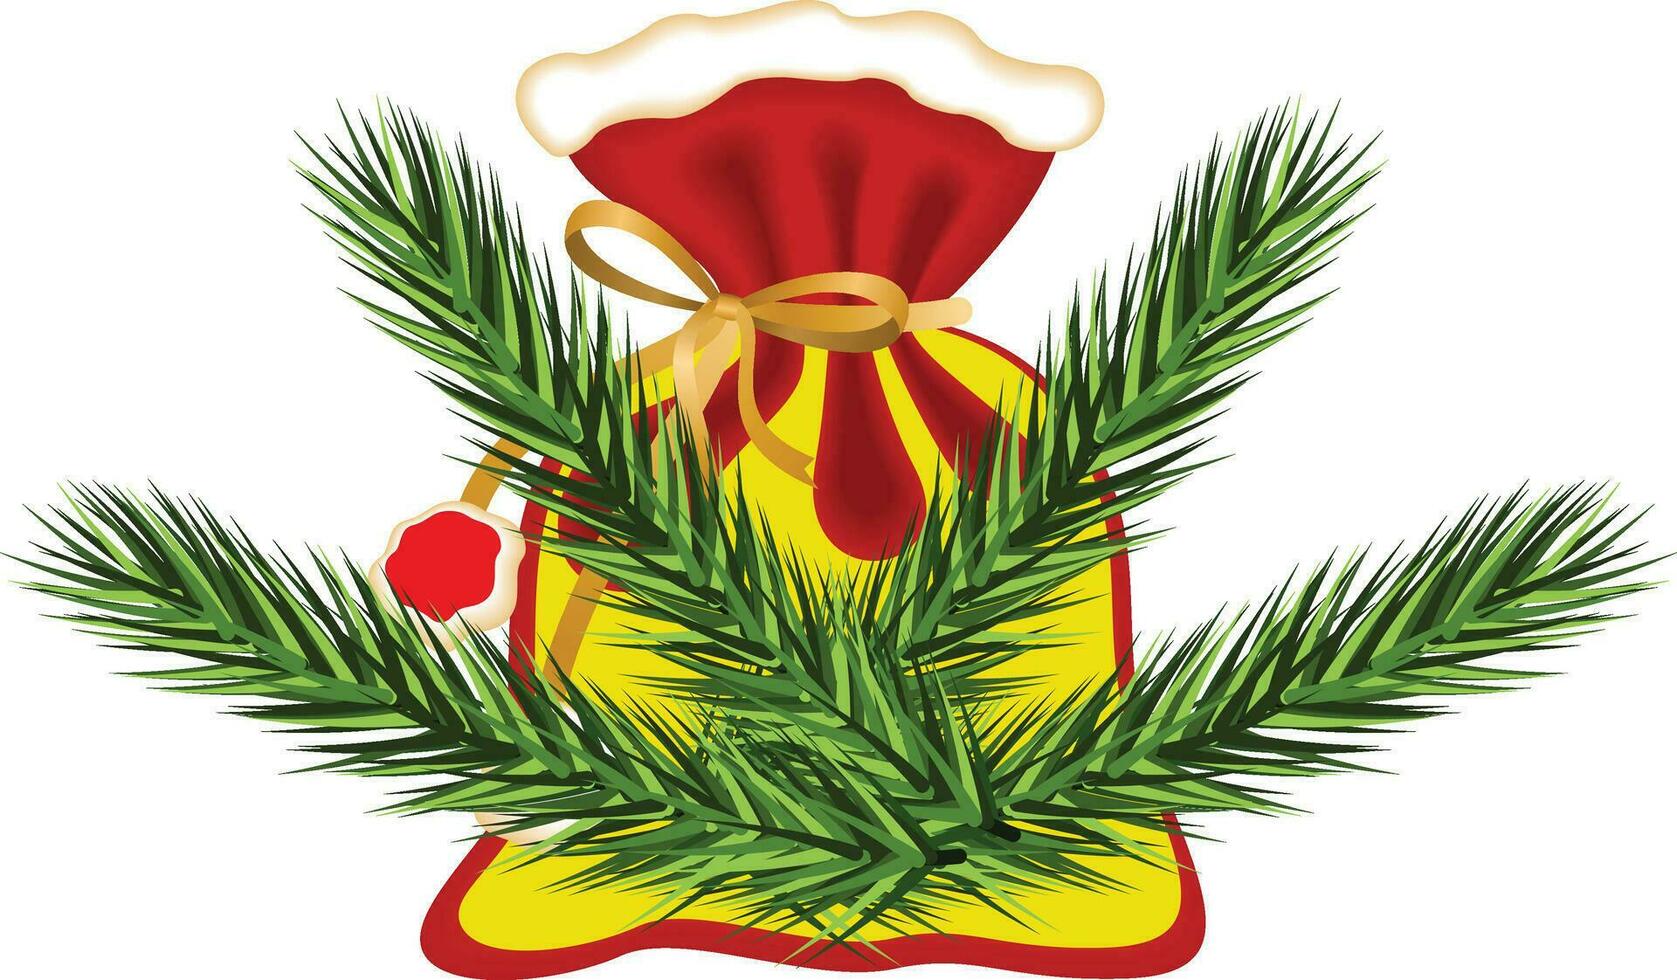 d'oro tintinnio campane con rosso nastro arco e abete branche d'oro Natale campana con rami vettore